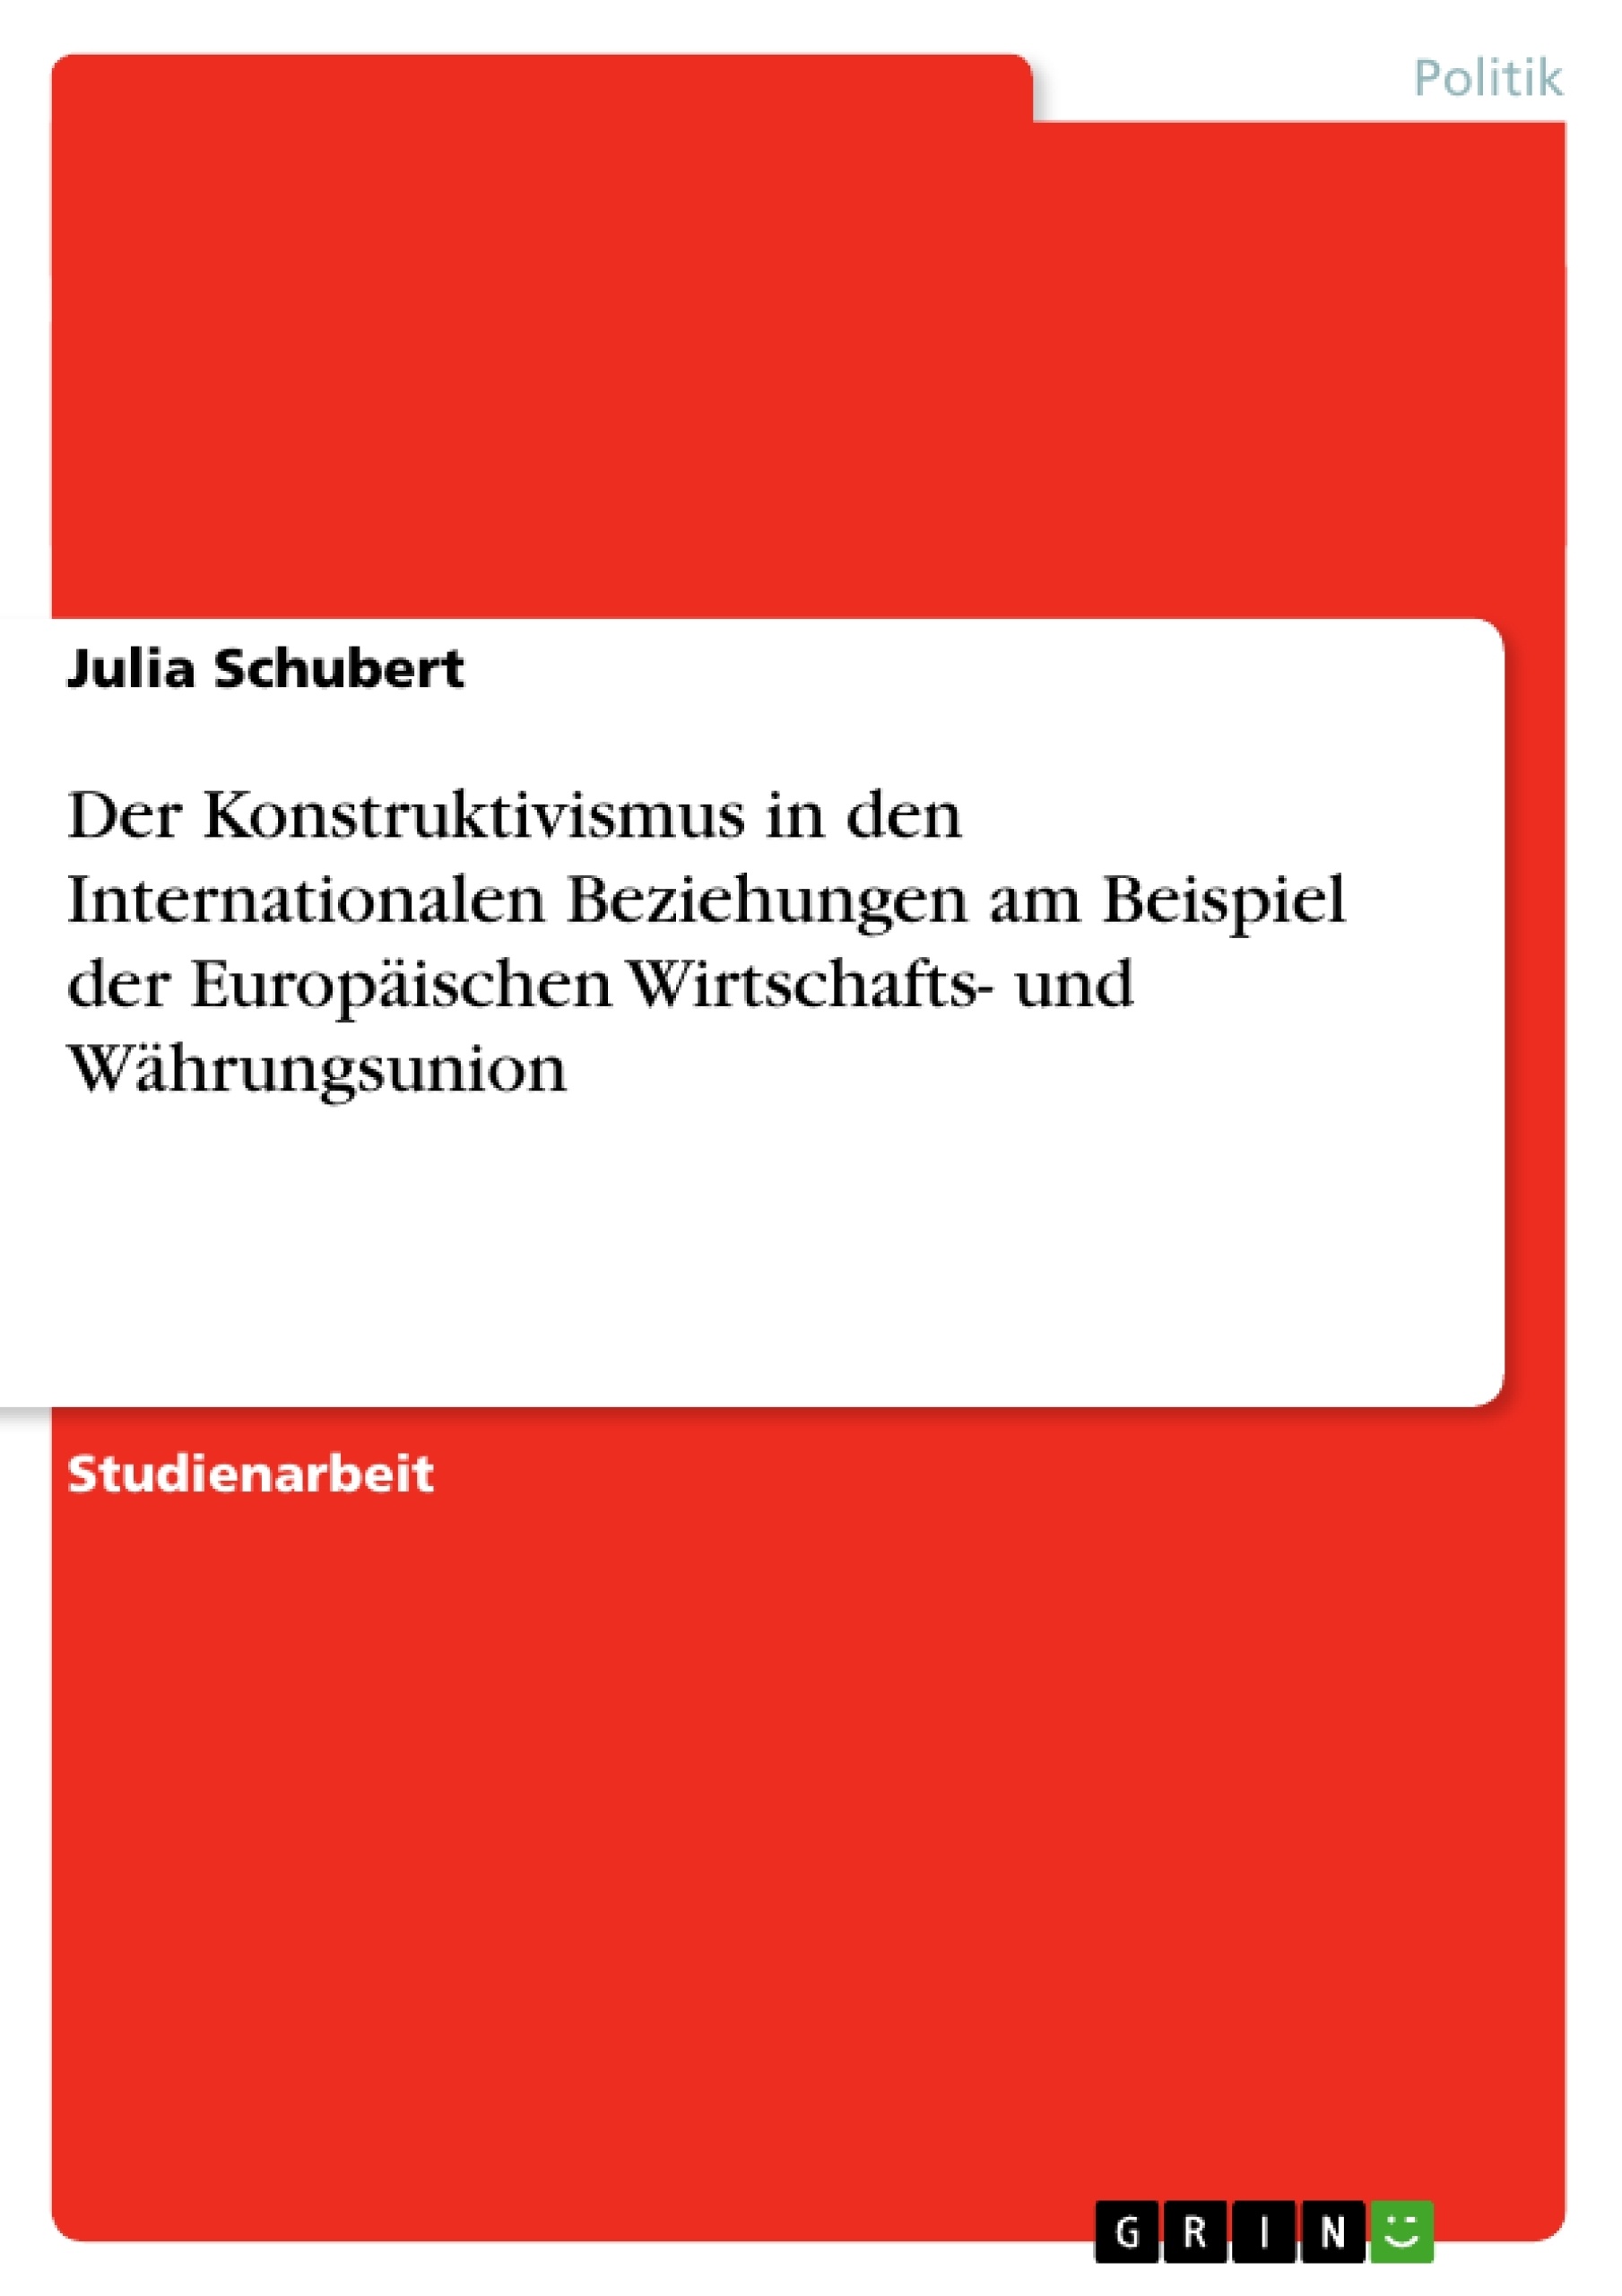 Title: Der Konstruktivismus in den Internationalen Beziehungen am Beispiel der Europäischen Wirtschafts- und Währungsunion